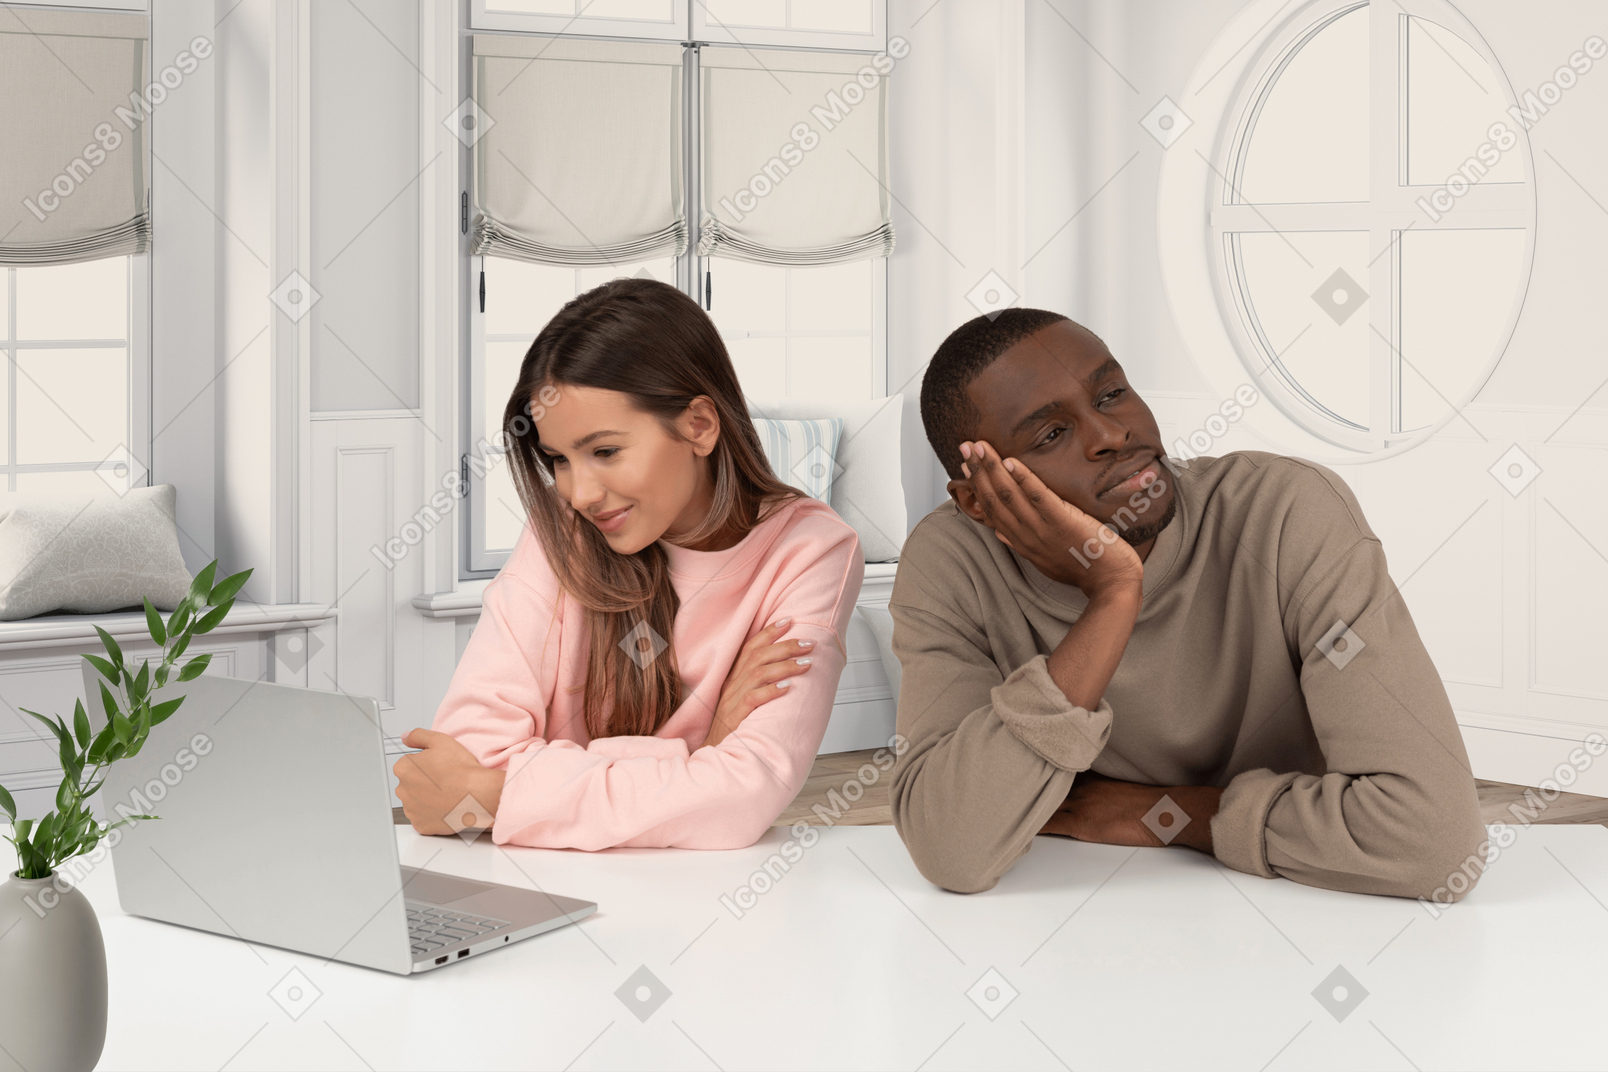 한 남자와 한 여자가 노트북 테이블에 앉아